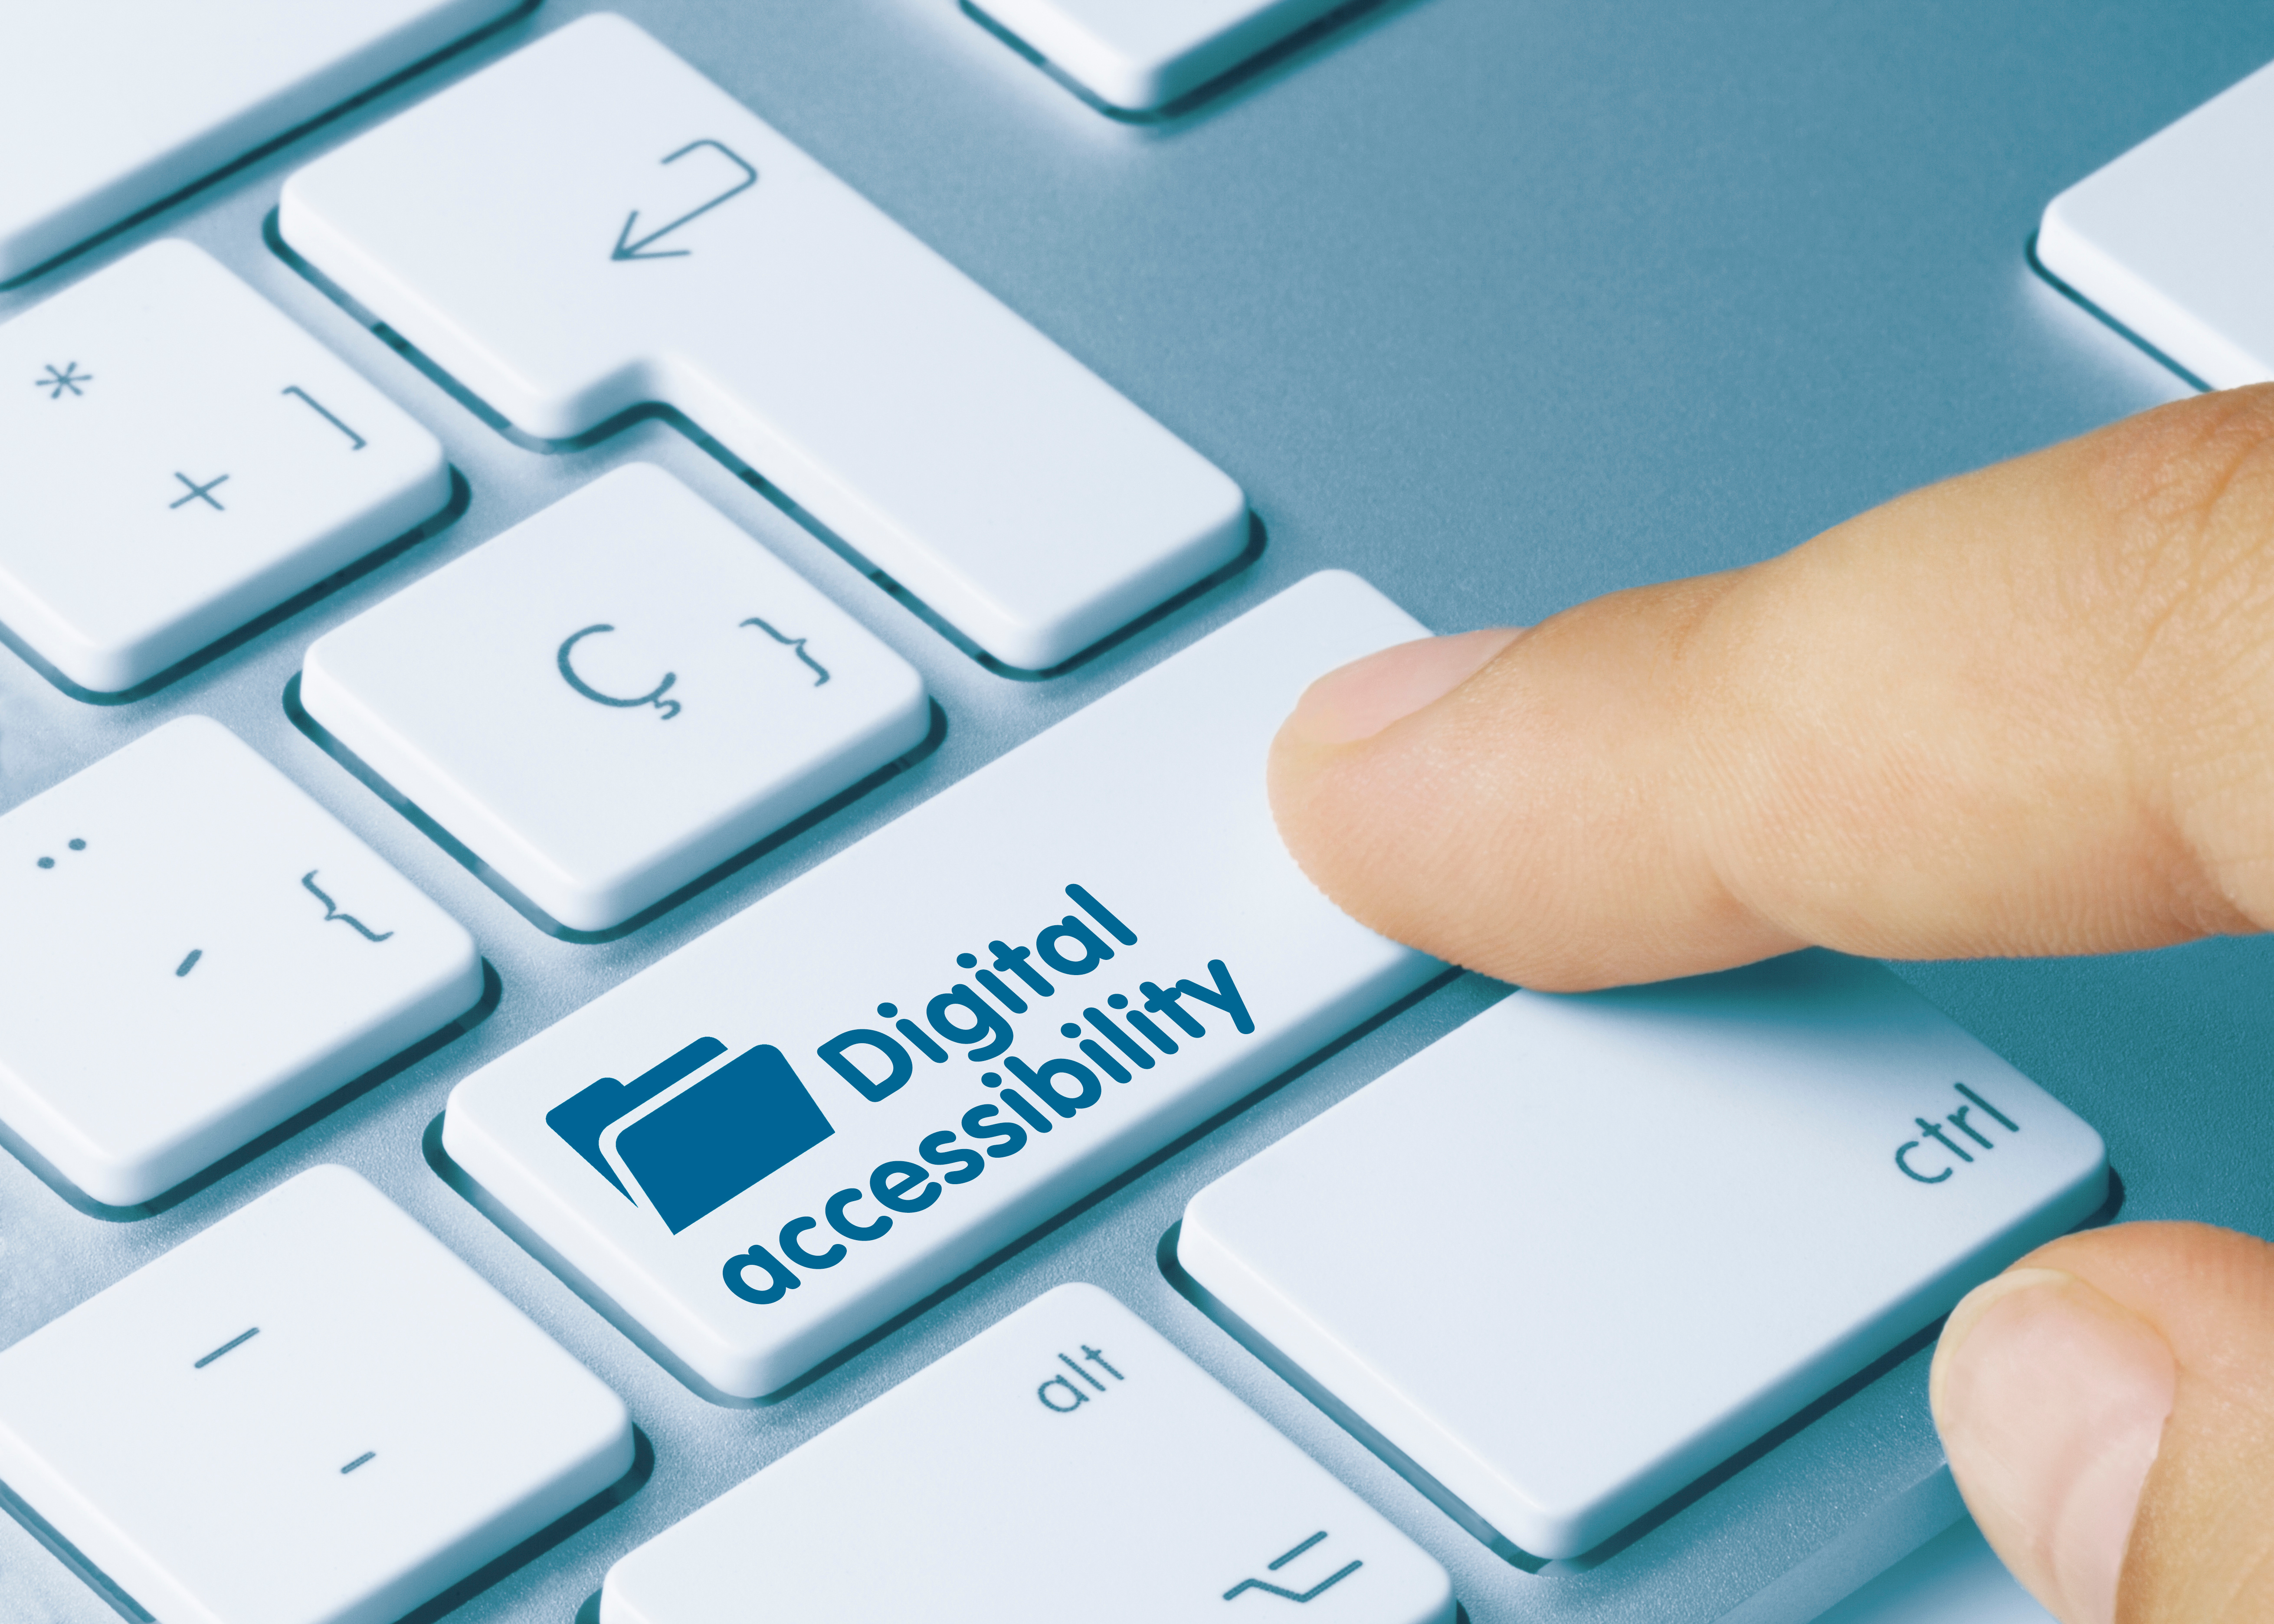 Eine Taste auf der Tastatur mit der Aufschrift "Digital Accessibility"